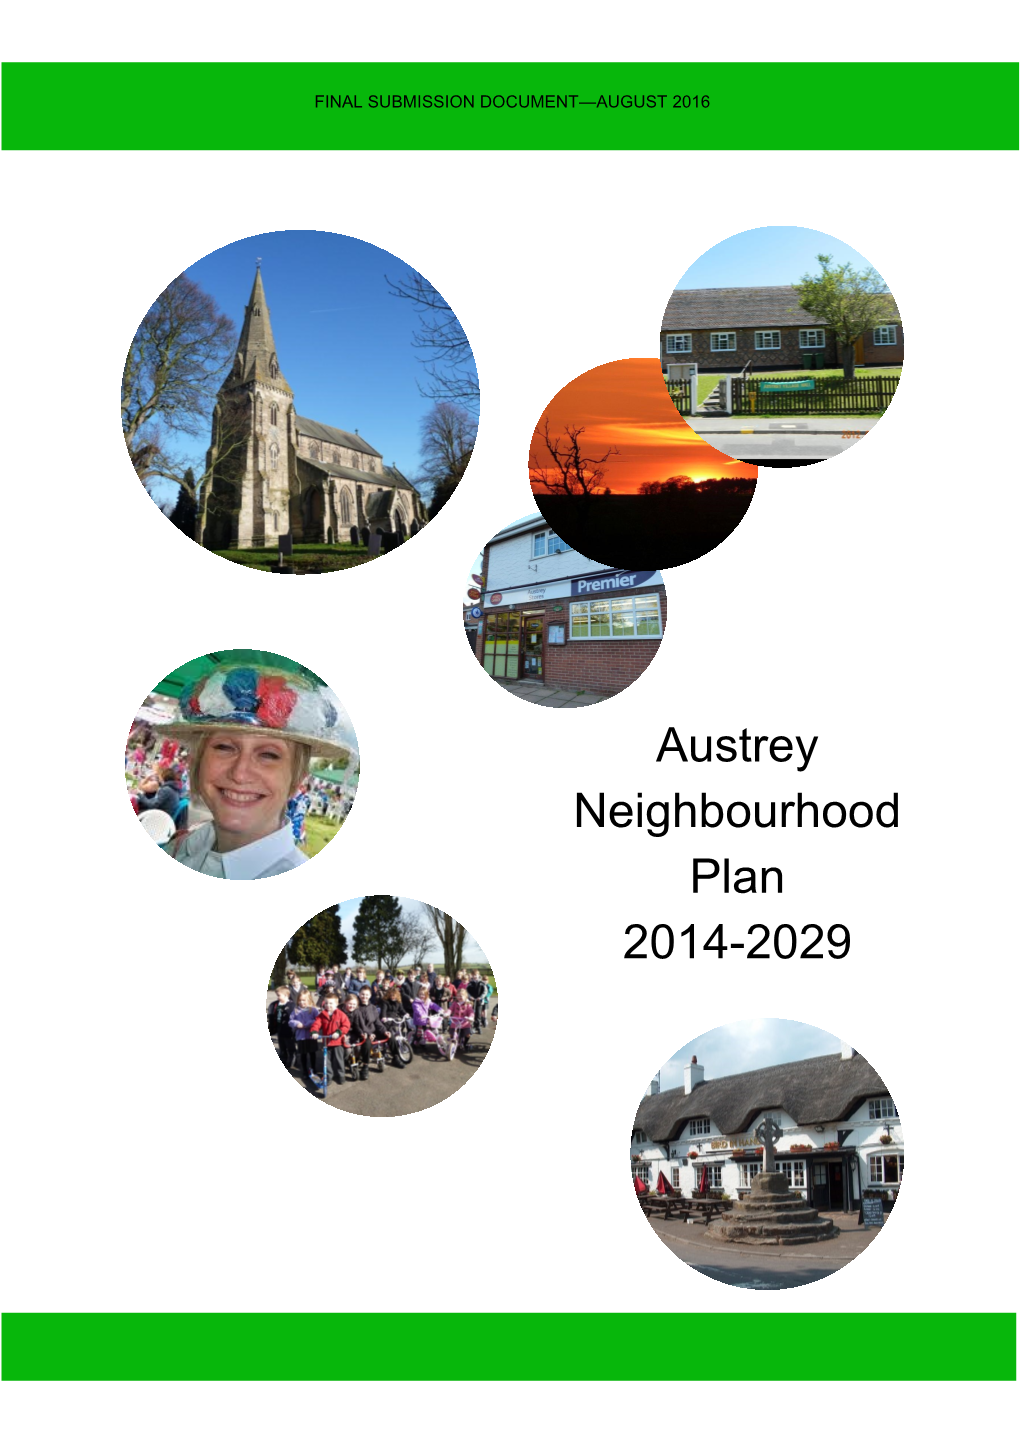 Austrey Neighbourhood Plan 2014-2029